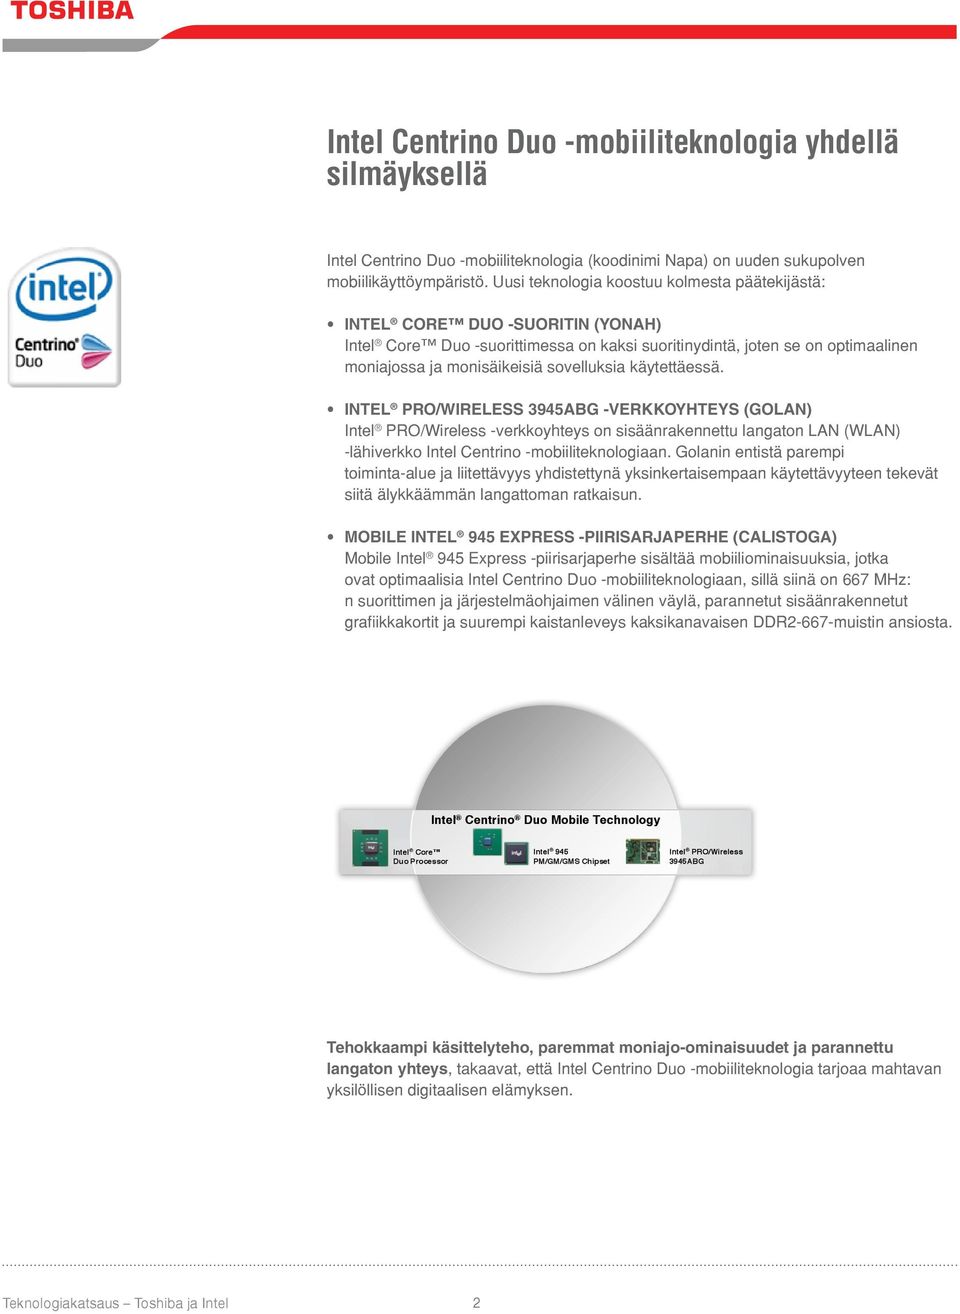 käytettäessä. INTEL PRO/WIRELESS 3945ABG -VERKKOYHTEYS (GOLAN) Intel PRO/Wireless -verkkoyhteys on sisäänrakennettu langaton LAN (WLAN) -lähiverkko Intel Centrino -mobiiliteknologiaan.